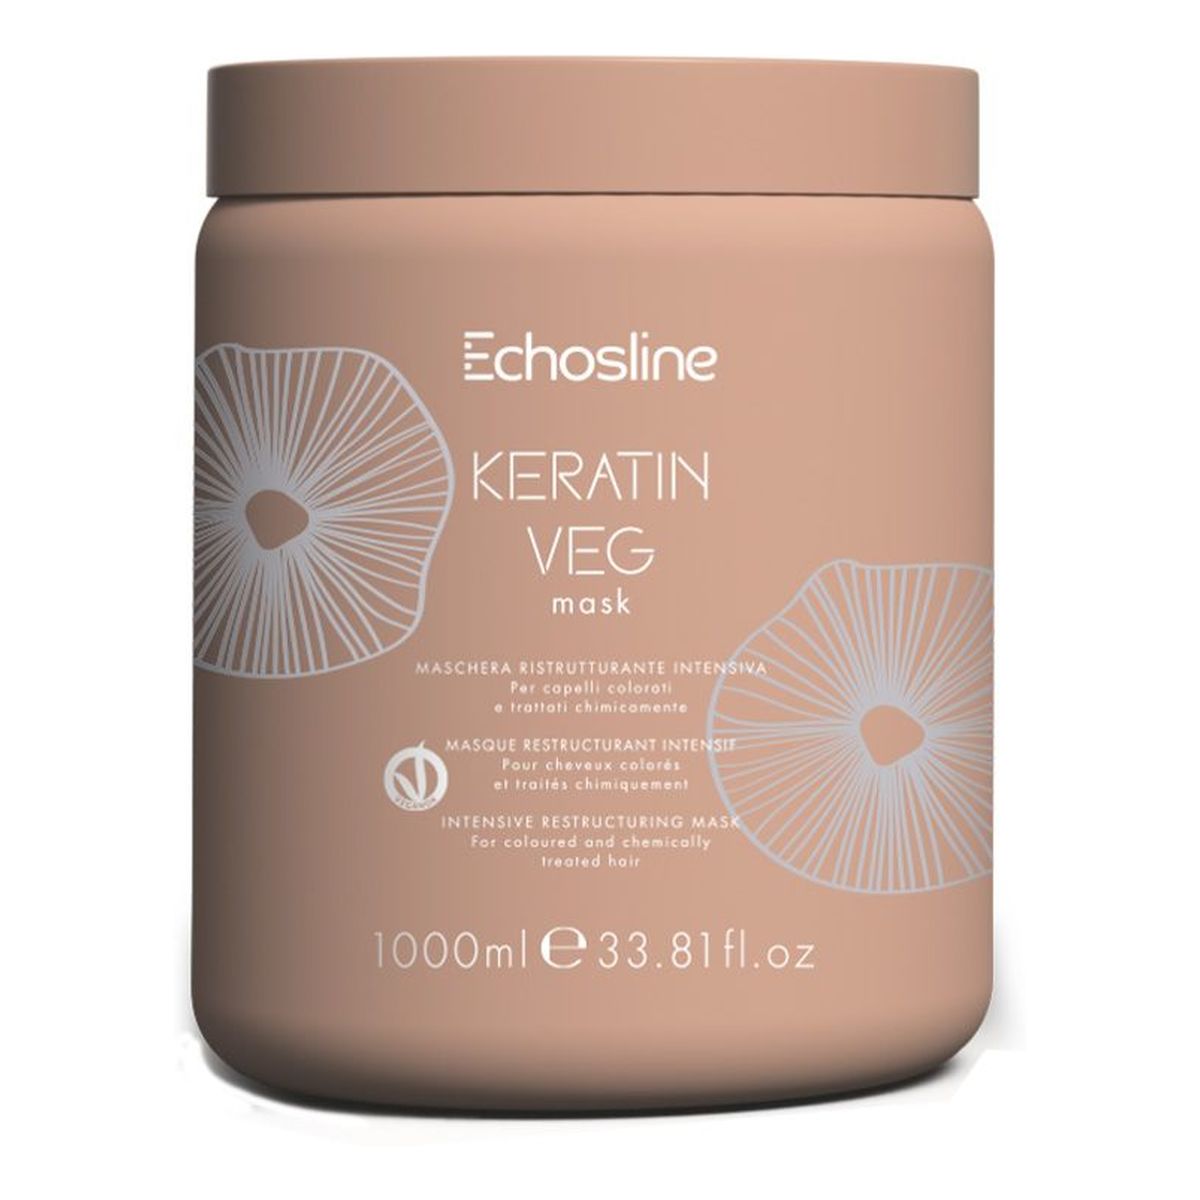 Echosline Keratin veg regenerująca maska do włosów 1000ml